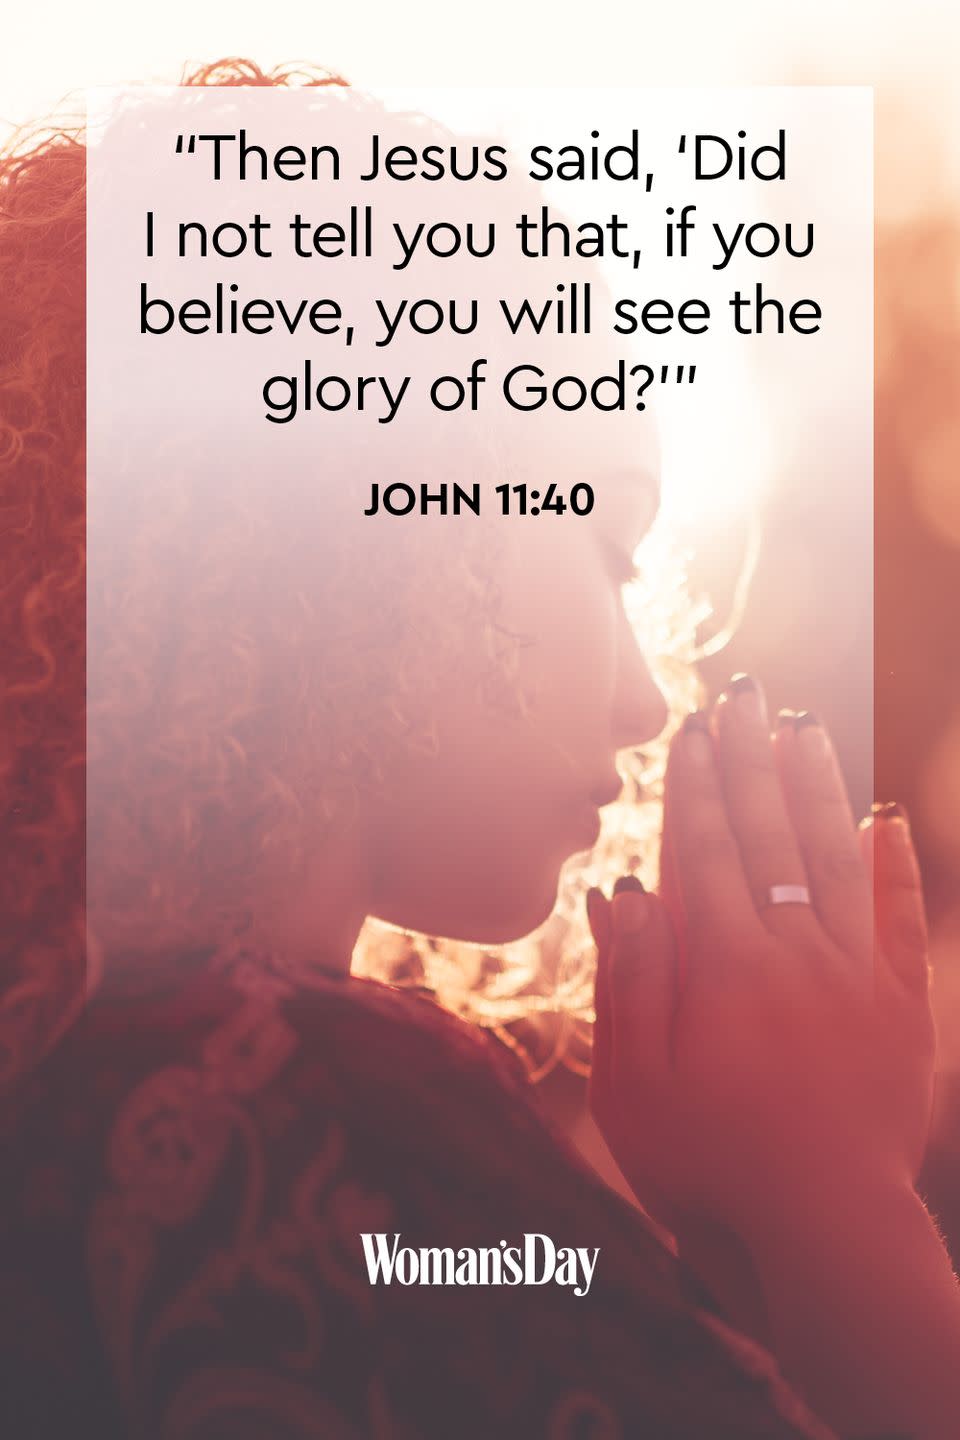 John 11:40